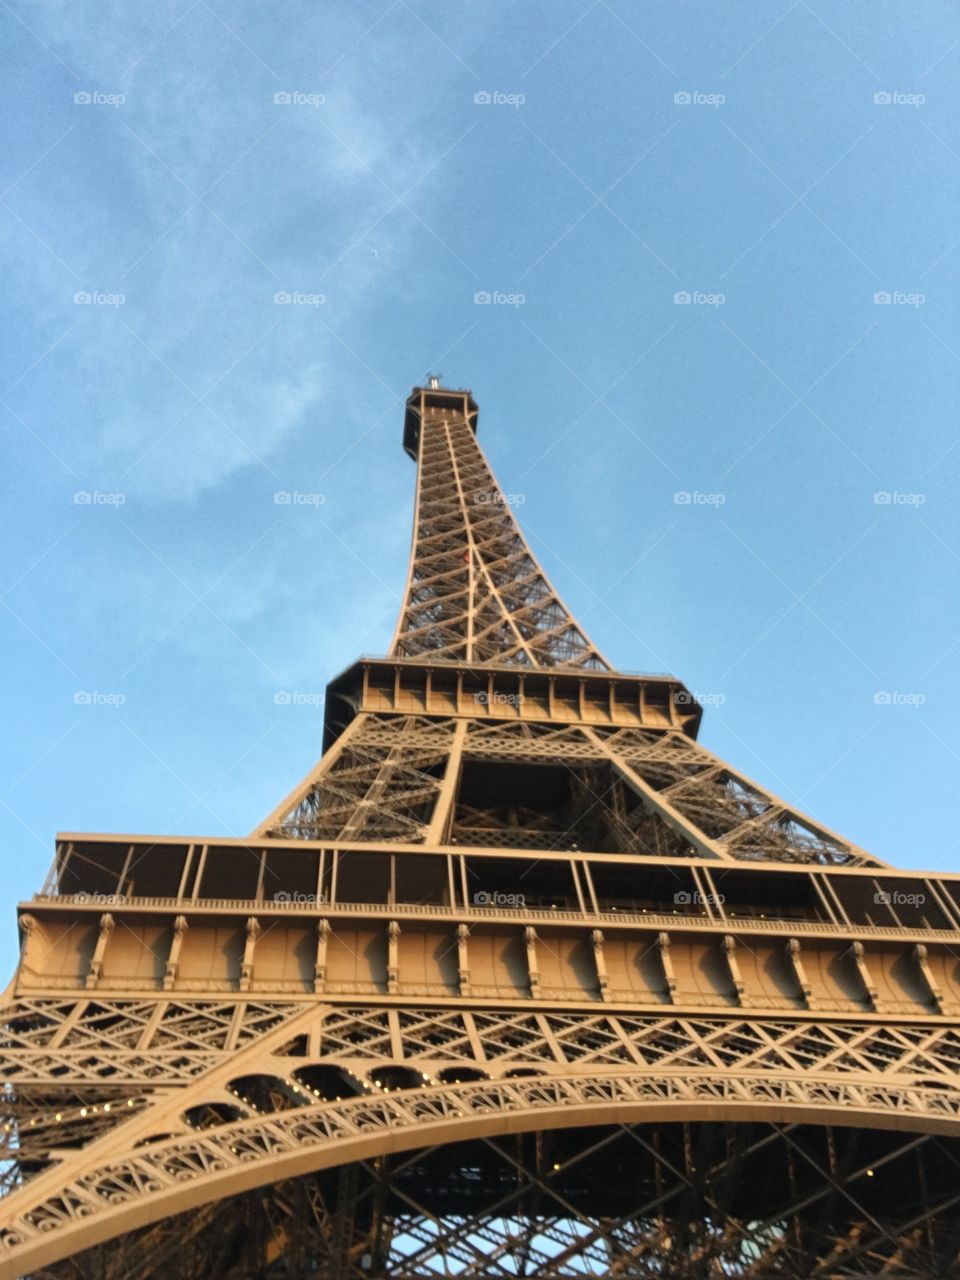 Paris, the infamous Eiffel Tower 